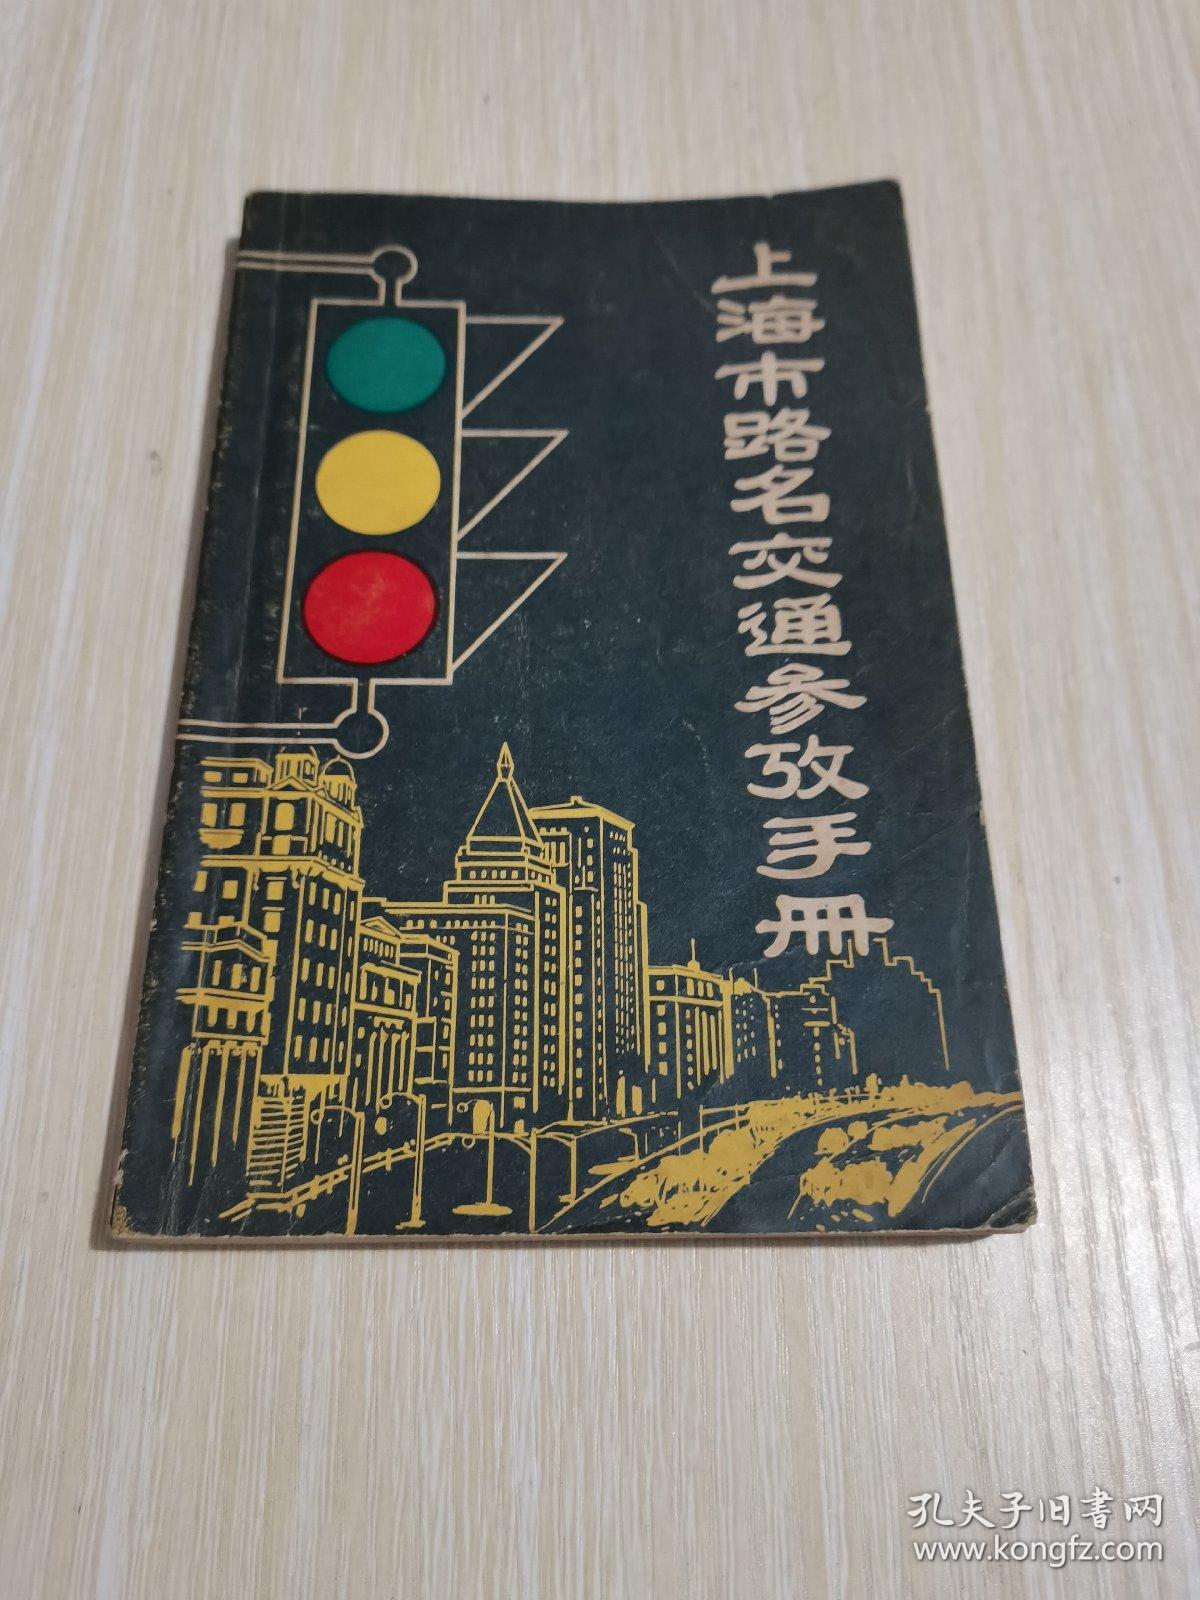 上海市路名交通参政手册